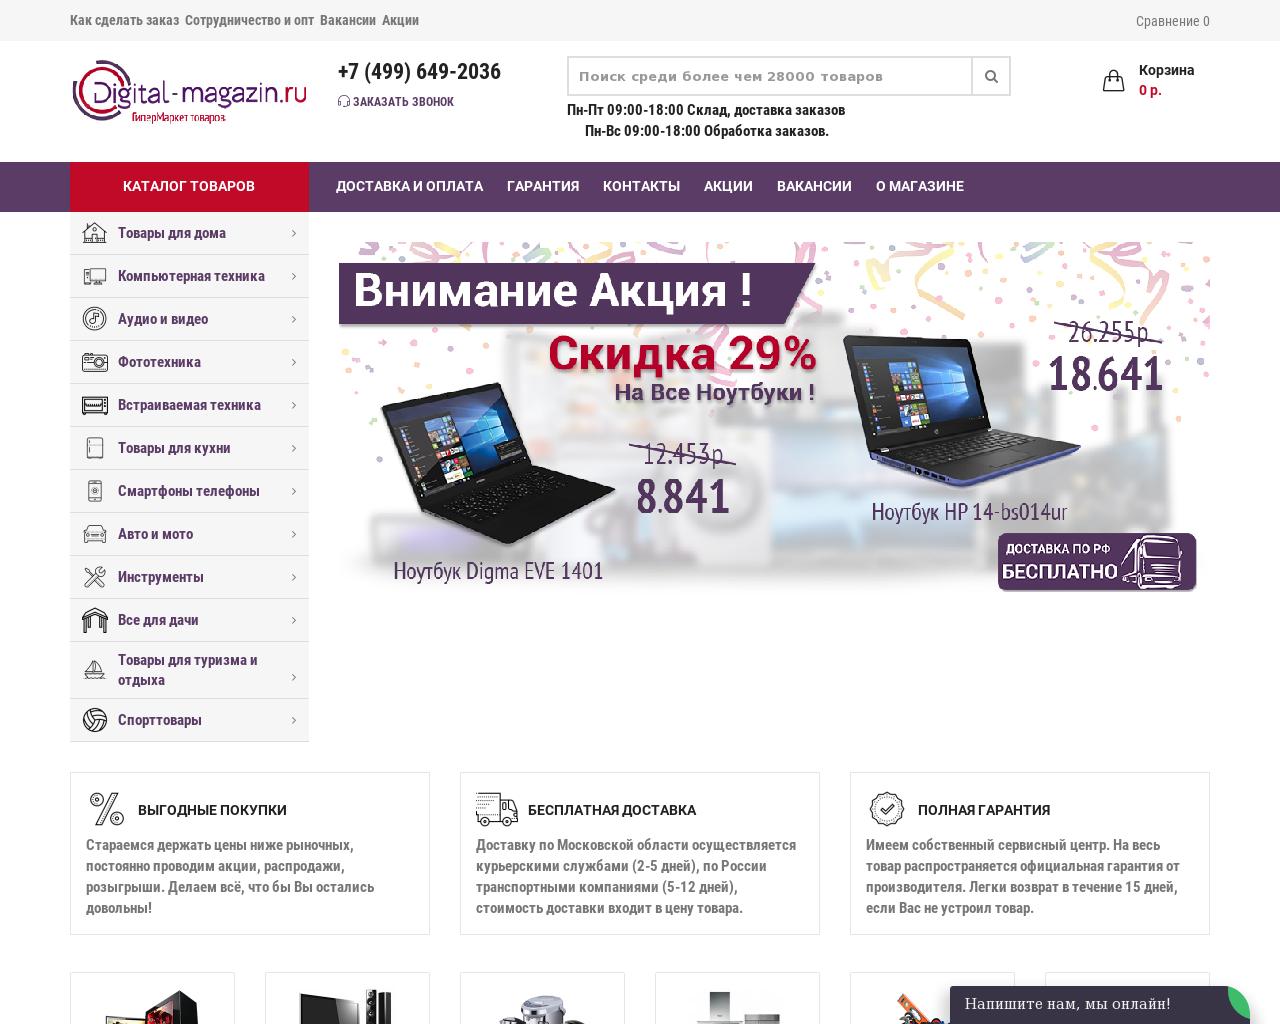 Изображение сайта digital-magazin.ru в разрешении 1280x1024